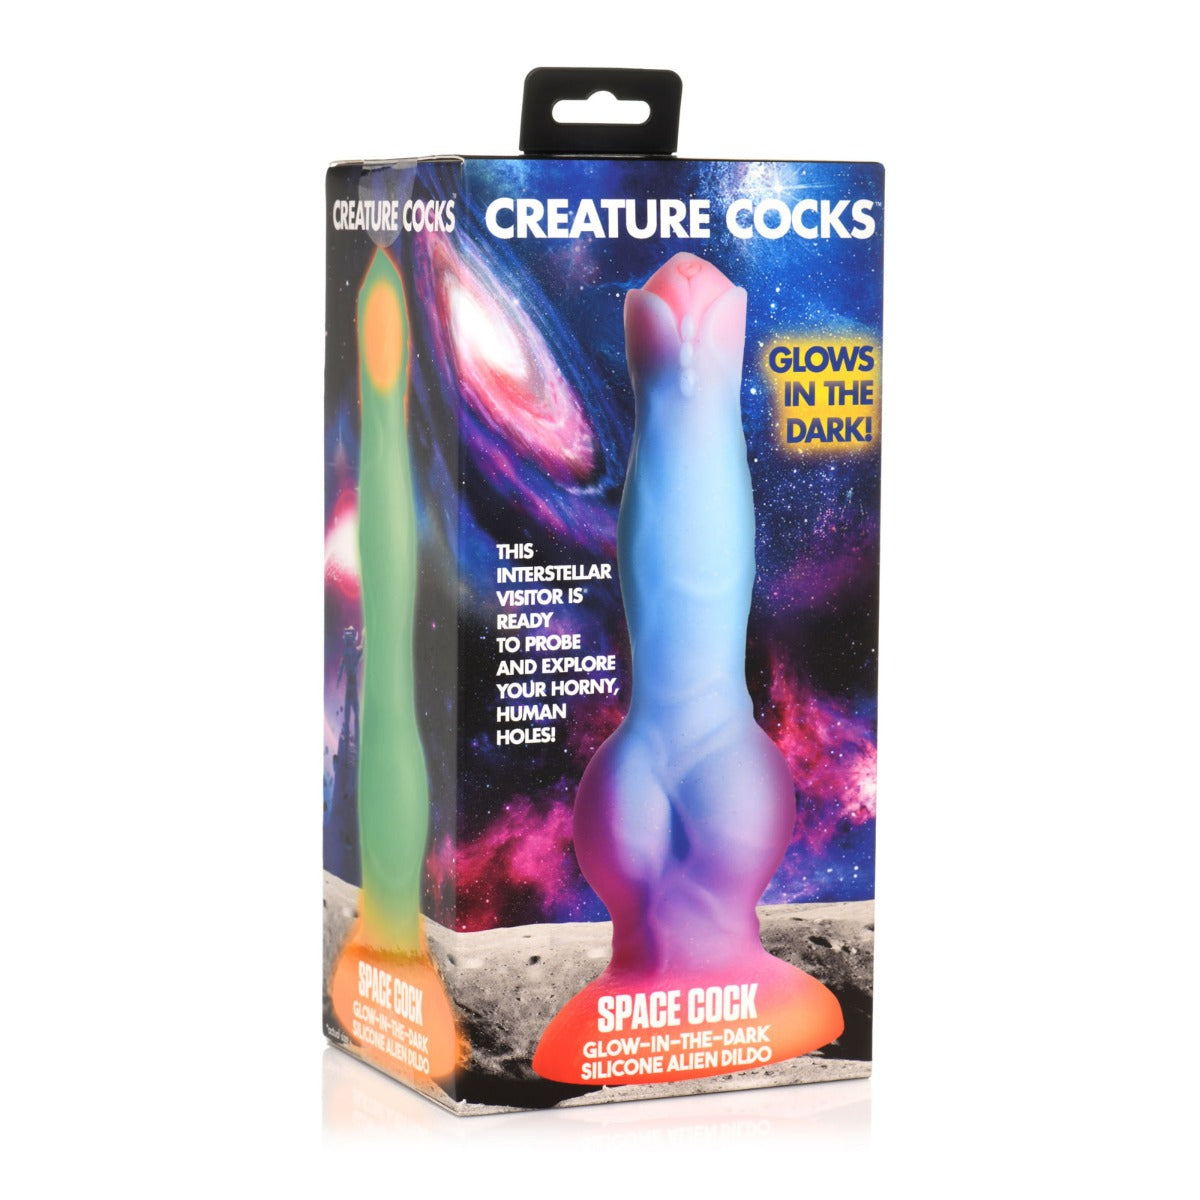 Creature Cocks Space Cock Glow In The Dark Alien Silicone Dildo Blue Purple - Simply Pleasure